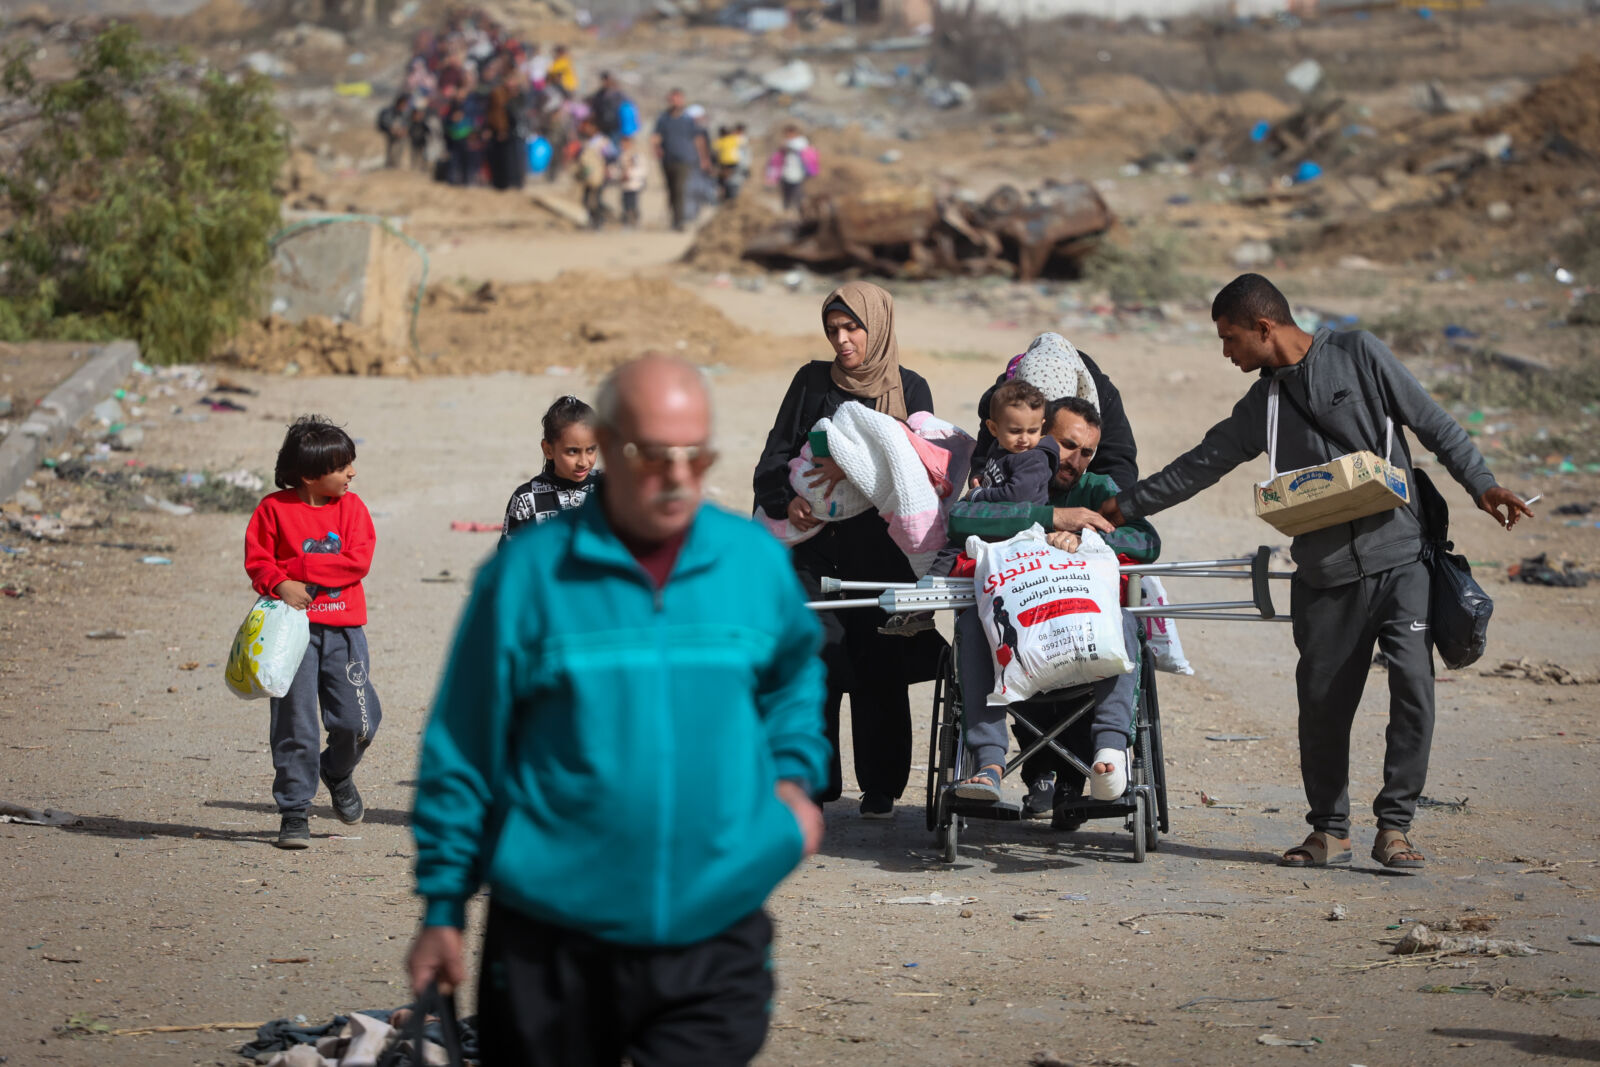 פליטים פלסטינים מהעיר עזה צועדים דרומה ברצועה, 26.11.23 (צילום: עטיה מוחמד)